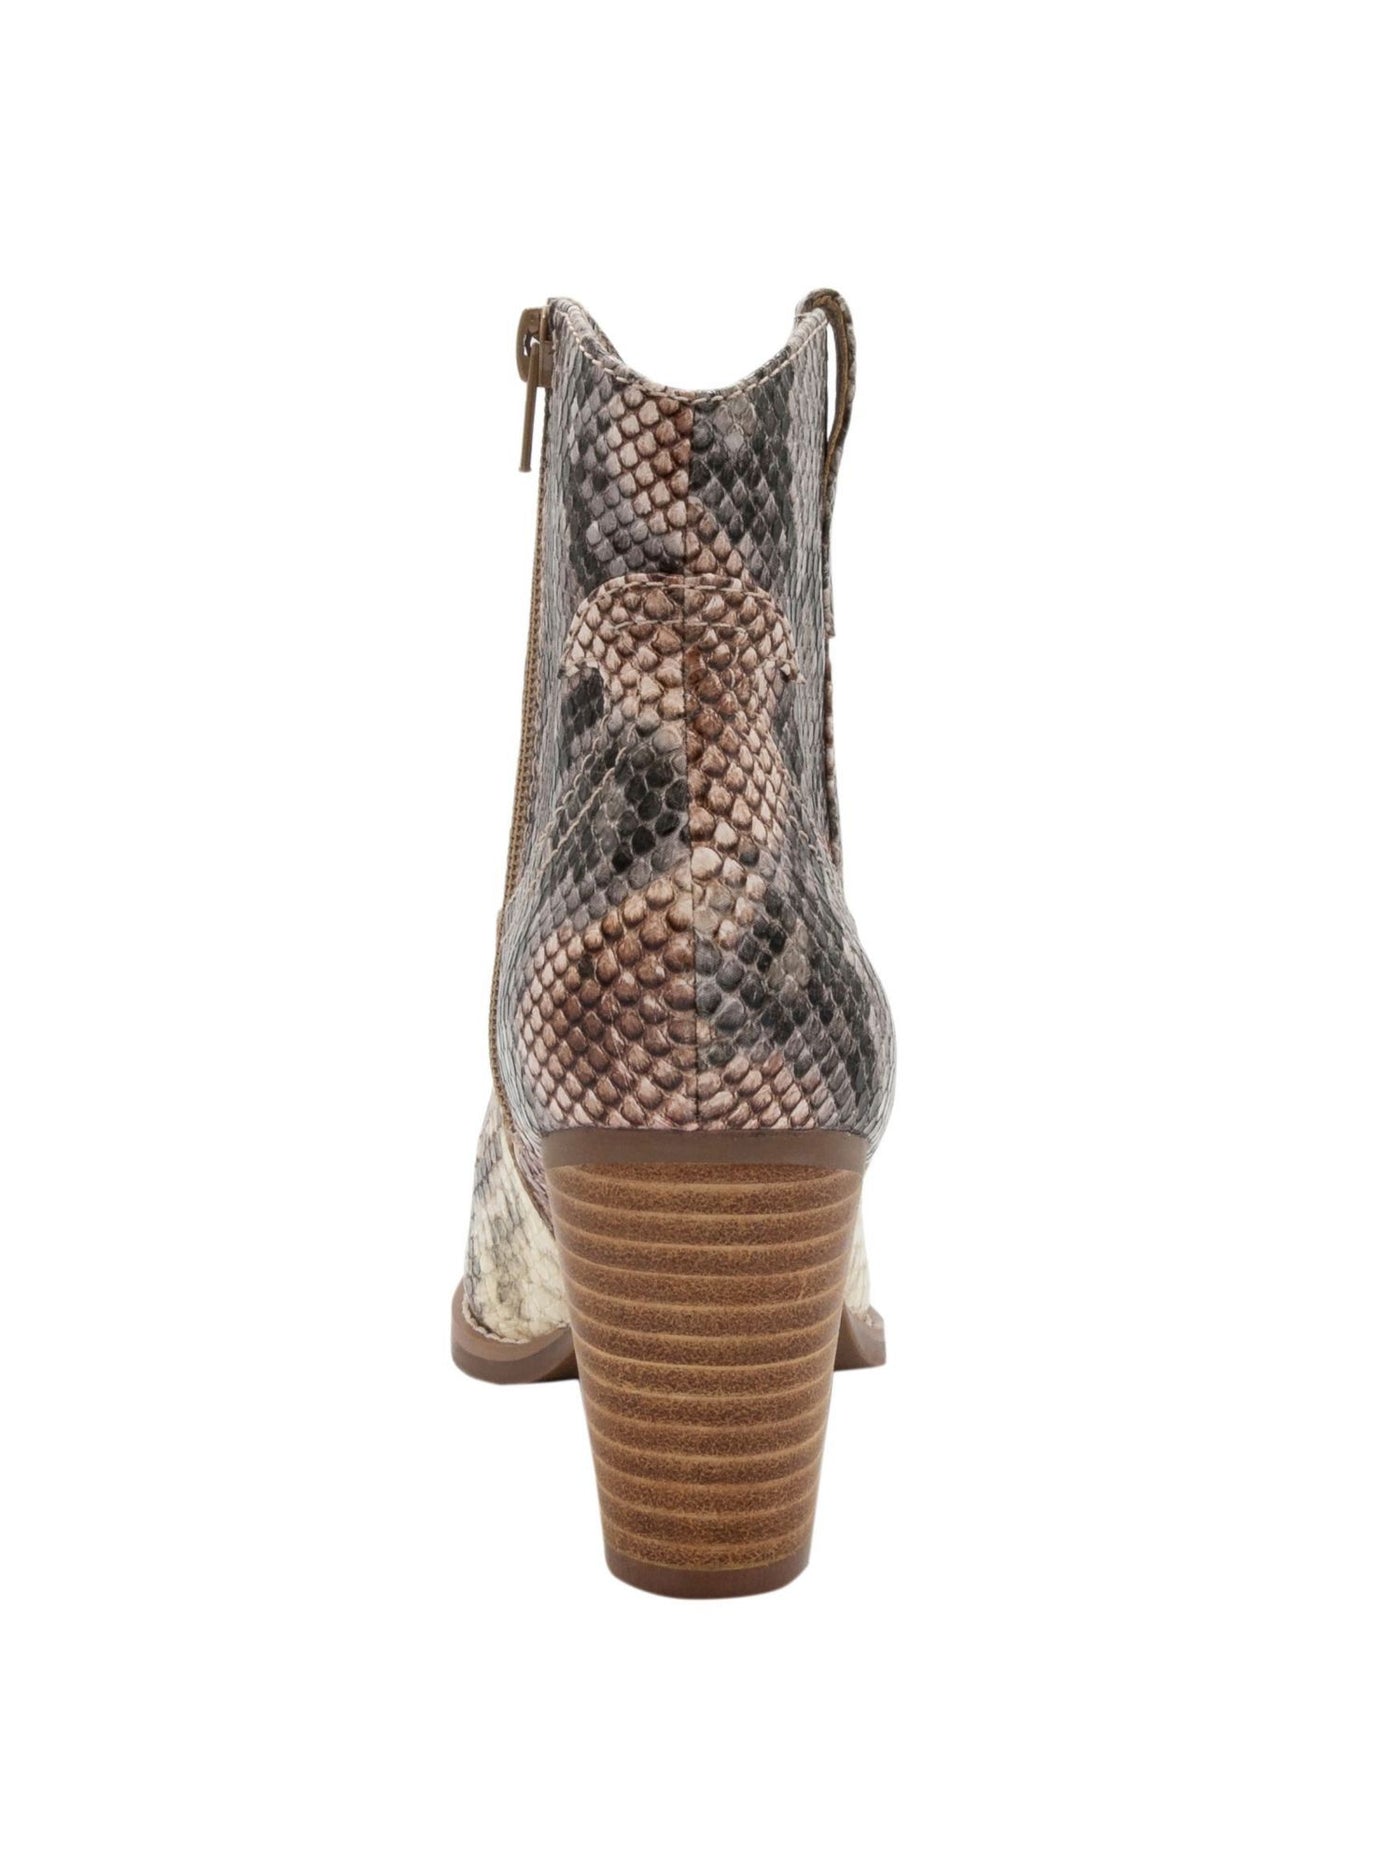 SUGAR Womens Beige Snakeskin Western Cushioned Tarah Almond Toe Block Heel Zip-Up Booties 8 M